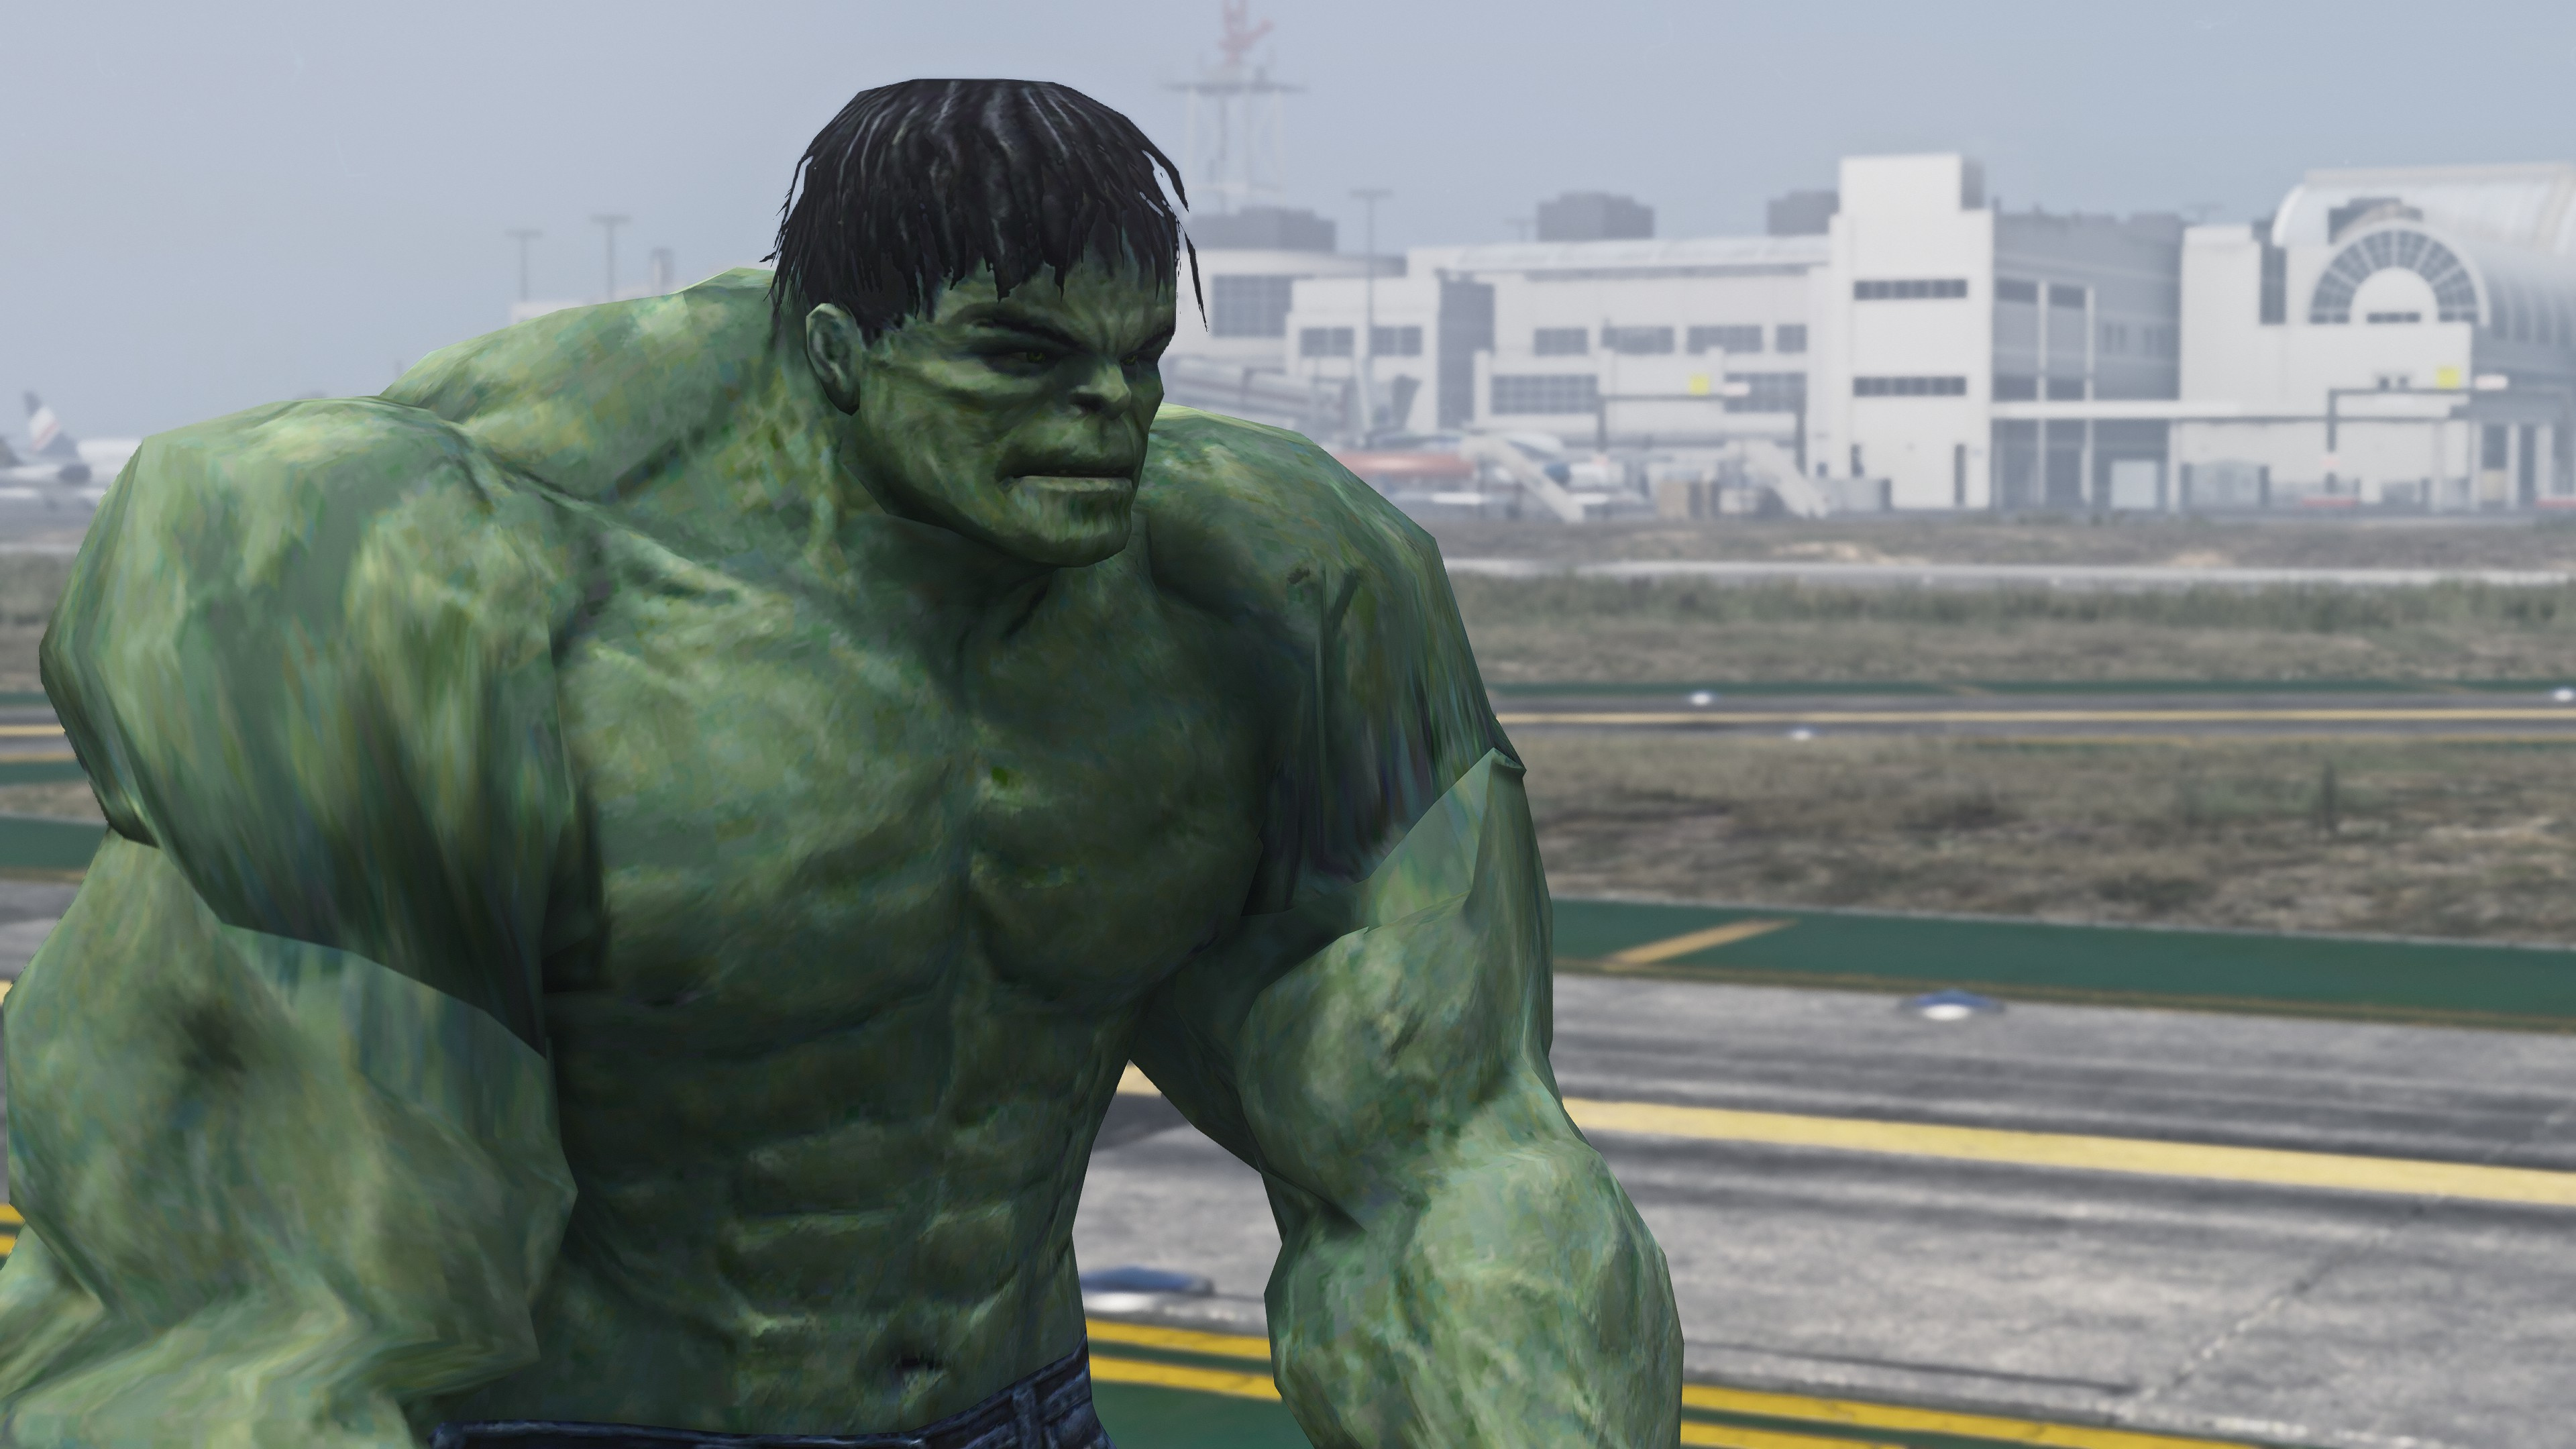 Incredible hulk